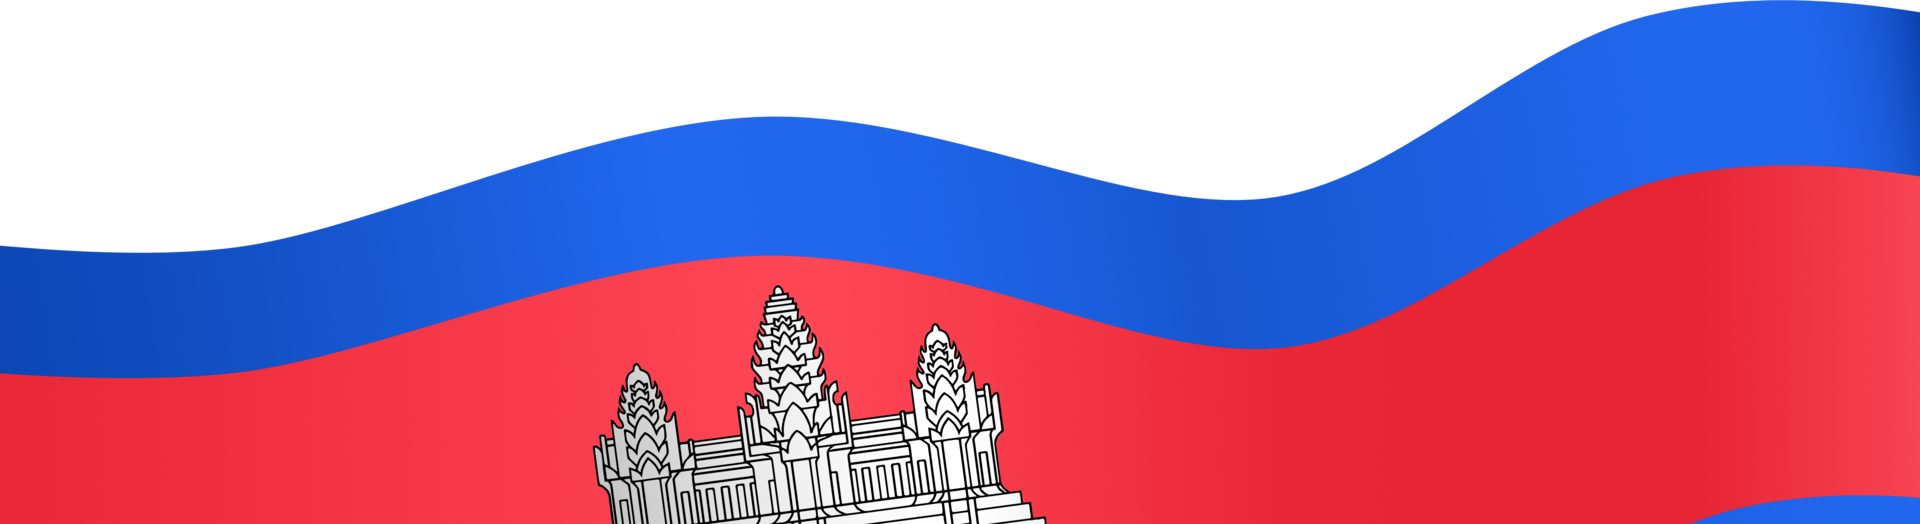 kambodscha-flaggenwelle lokalisiert auf png oder transparentem hintergrund